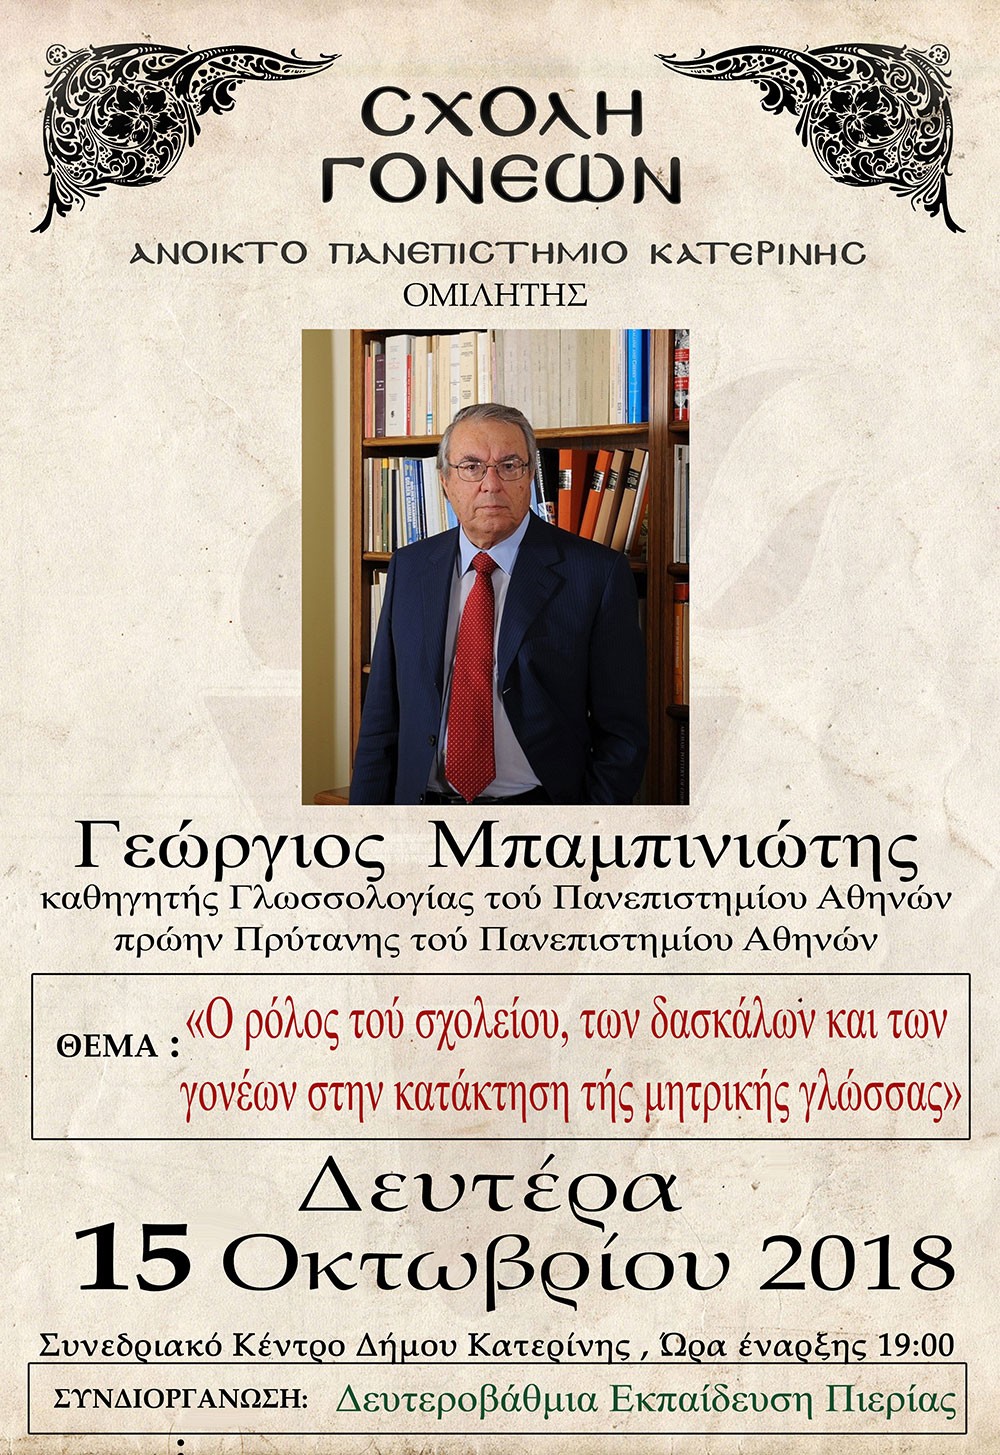 η αφίσα της πρώτης εκδήλωσης με τον καθηγητή κ.Γεώργιο Μπαμπινιώτη